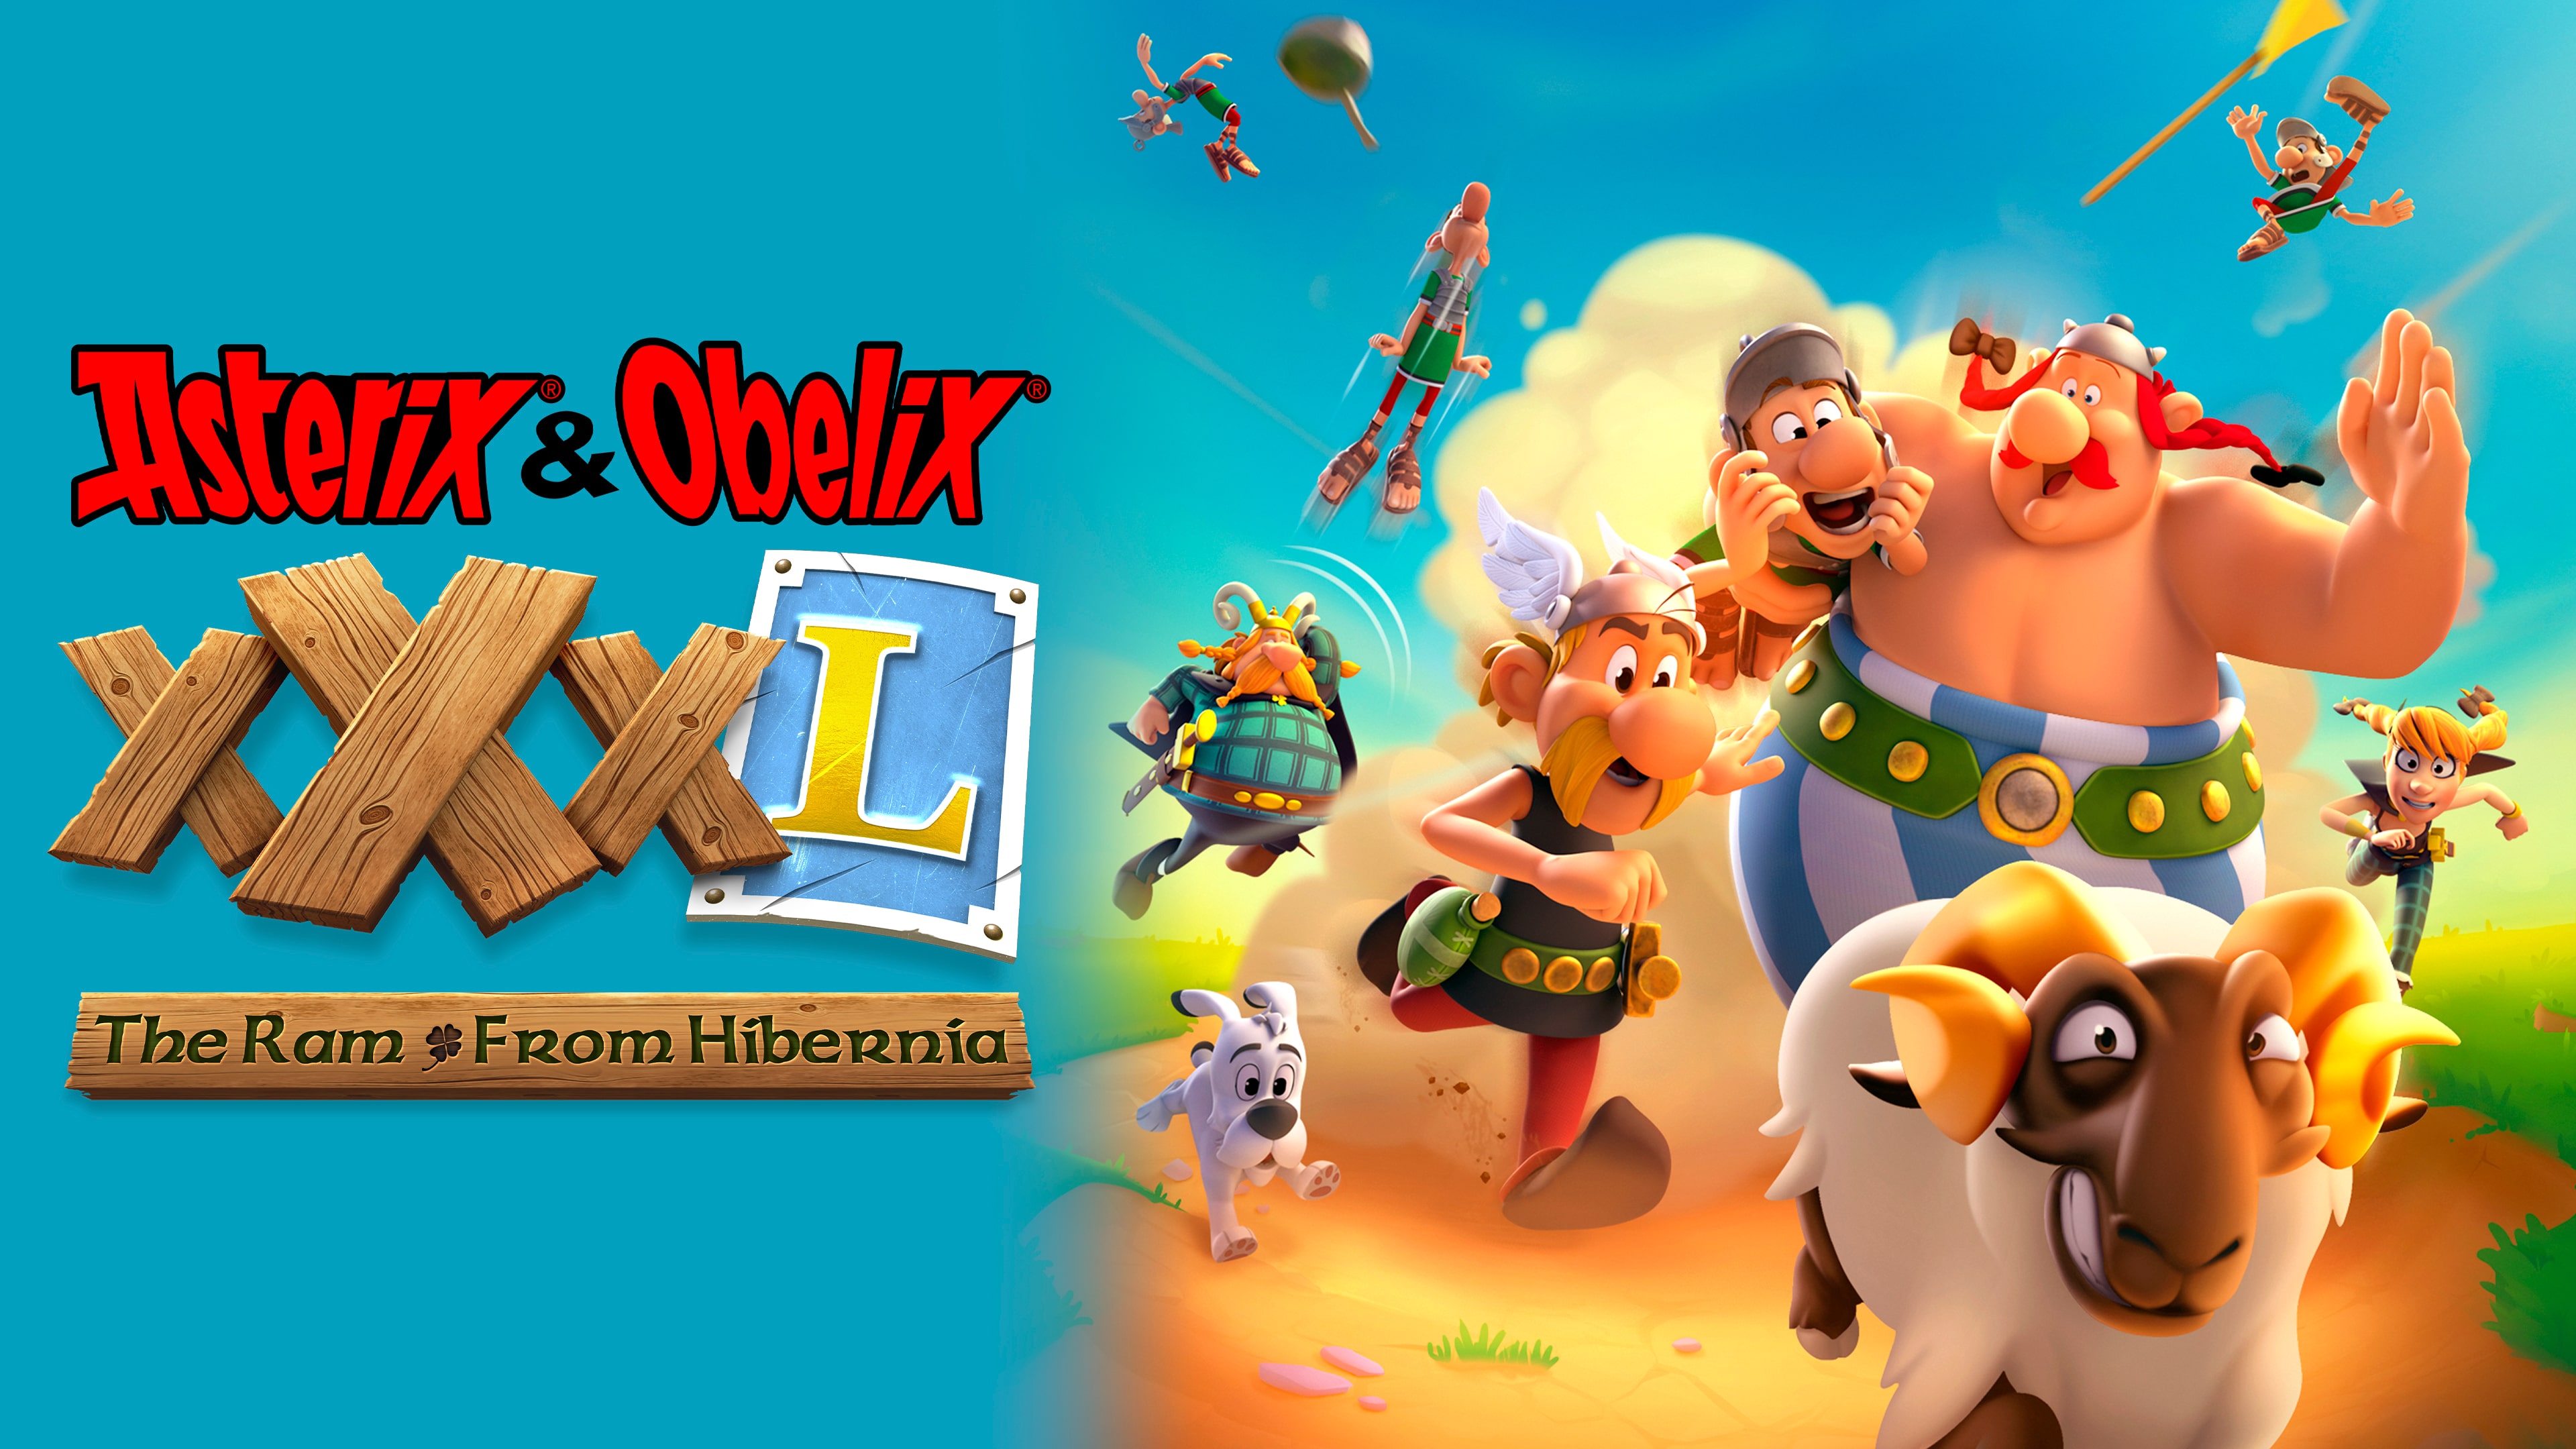 Asterix & Obelix XXXL Ram From Hibernia